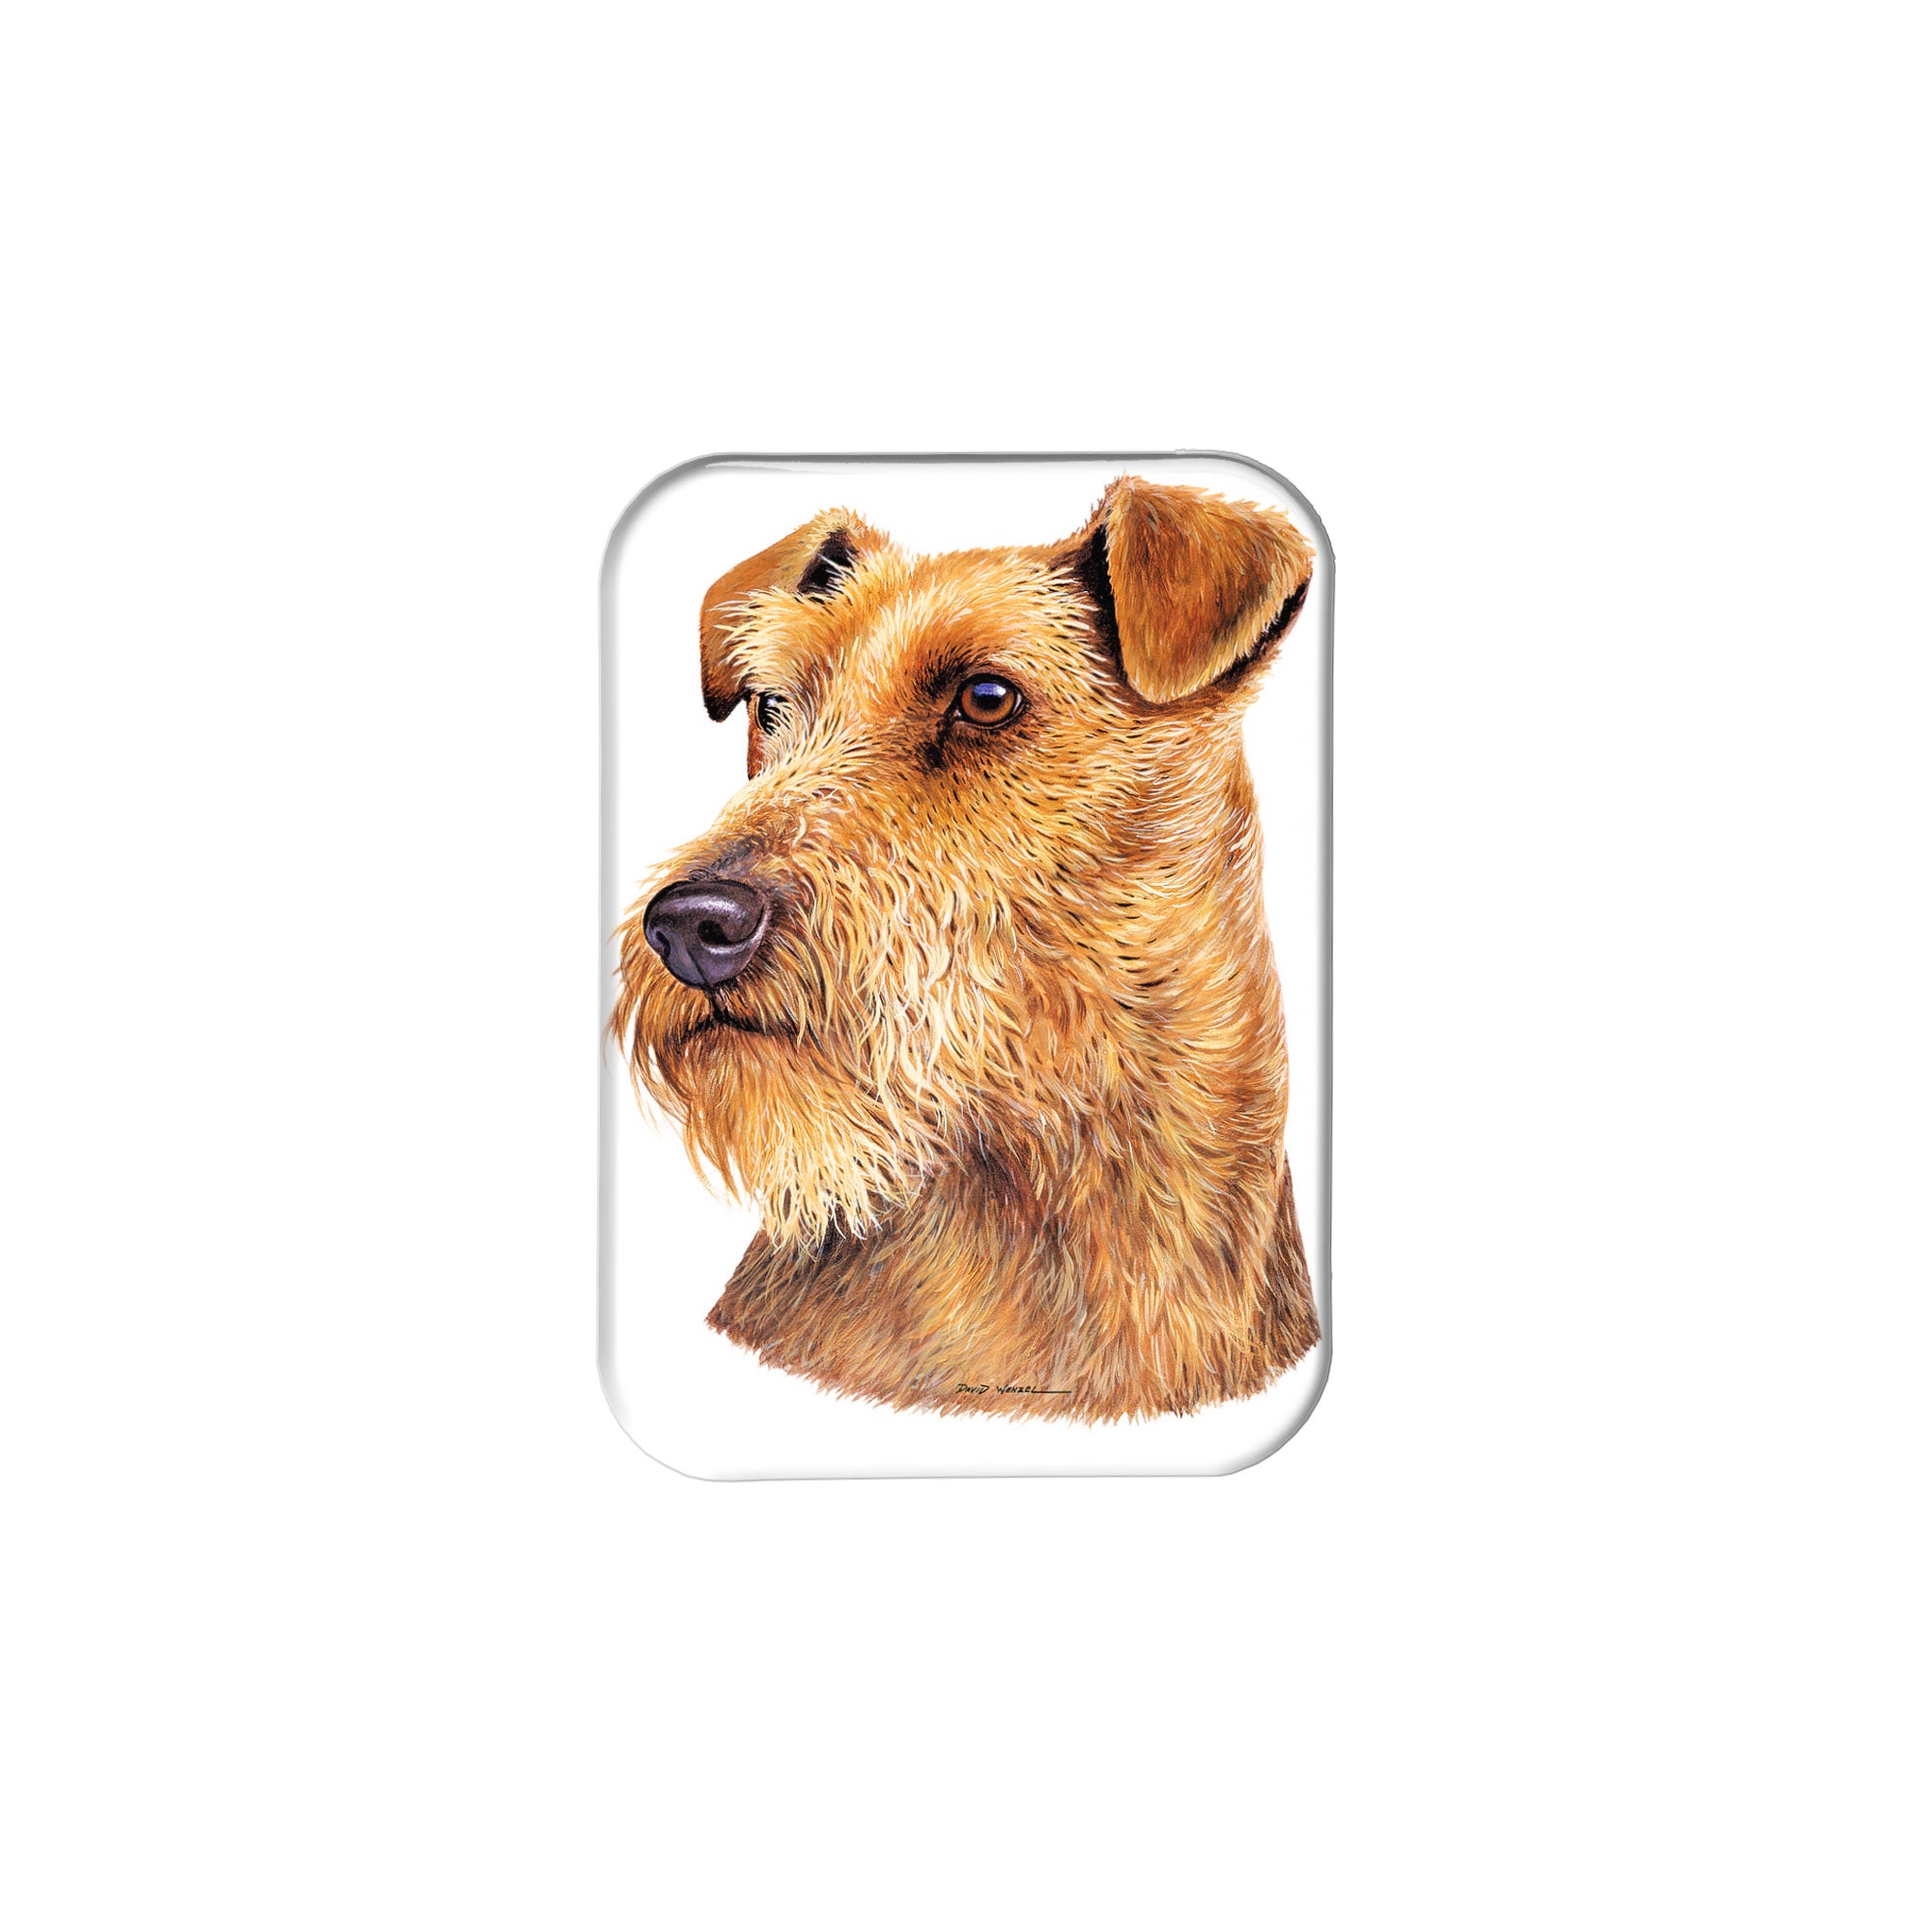 "Welsh Terrier" - 2.5" X 3.5" Rectangle Fridge Magnets